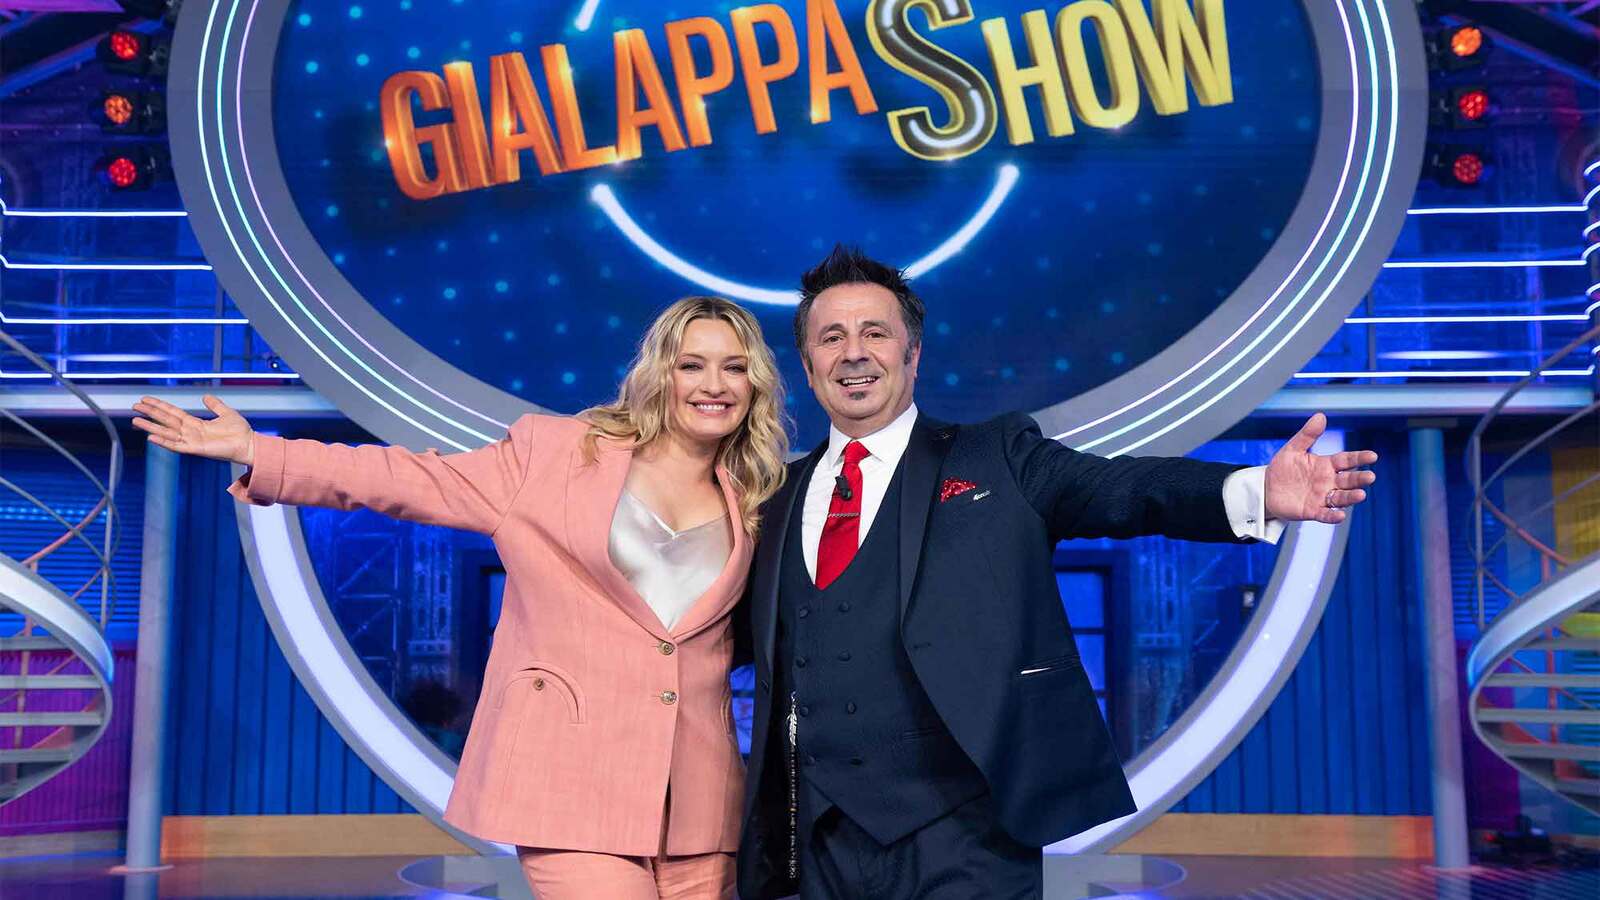 GialappaShow su TV8, Carolina Crescentini con Mago Forest conduce la puntata del 9 luglio: anticipazioni